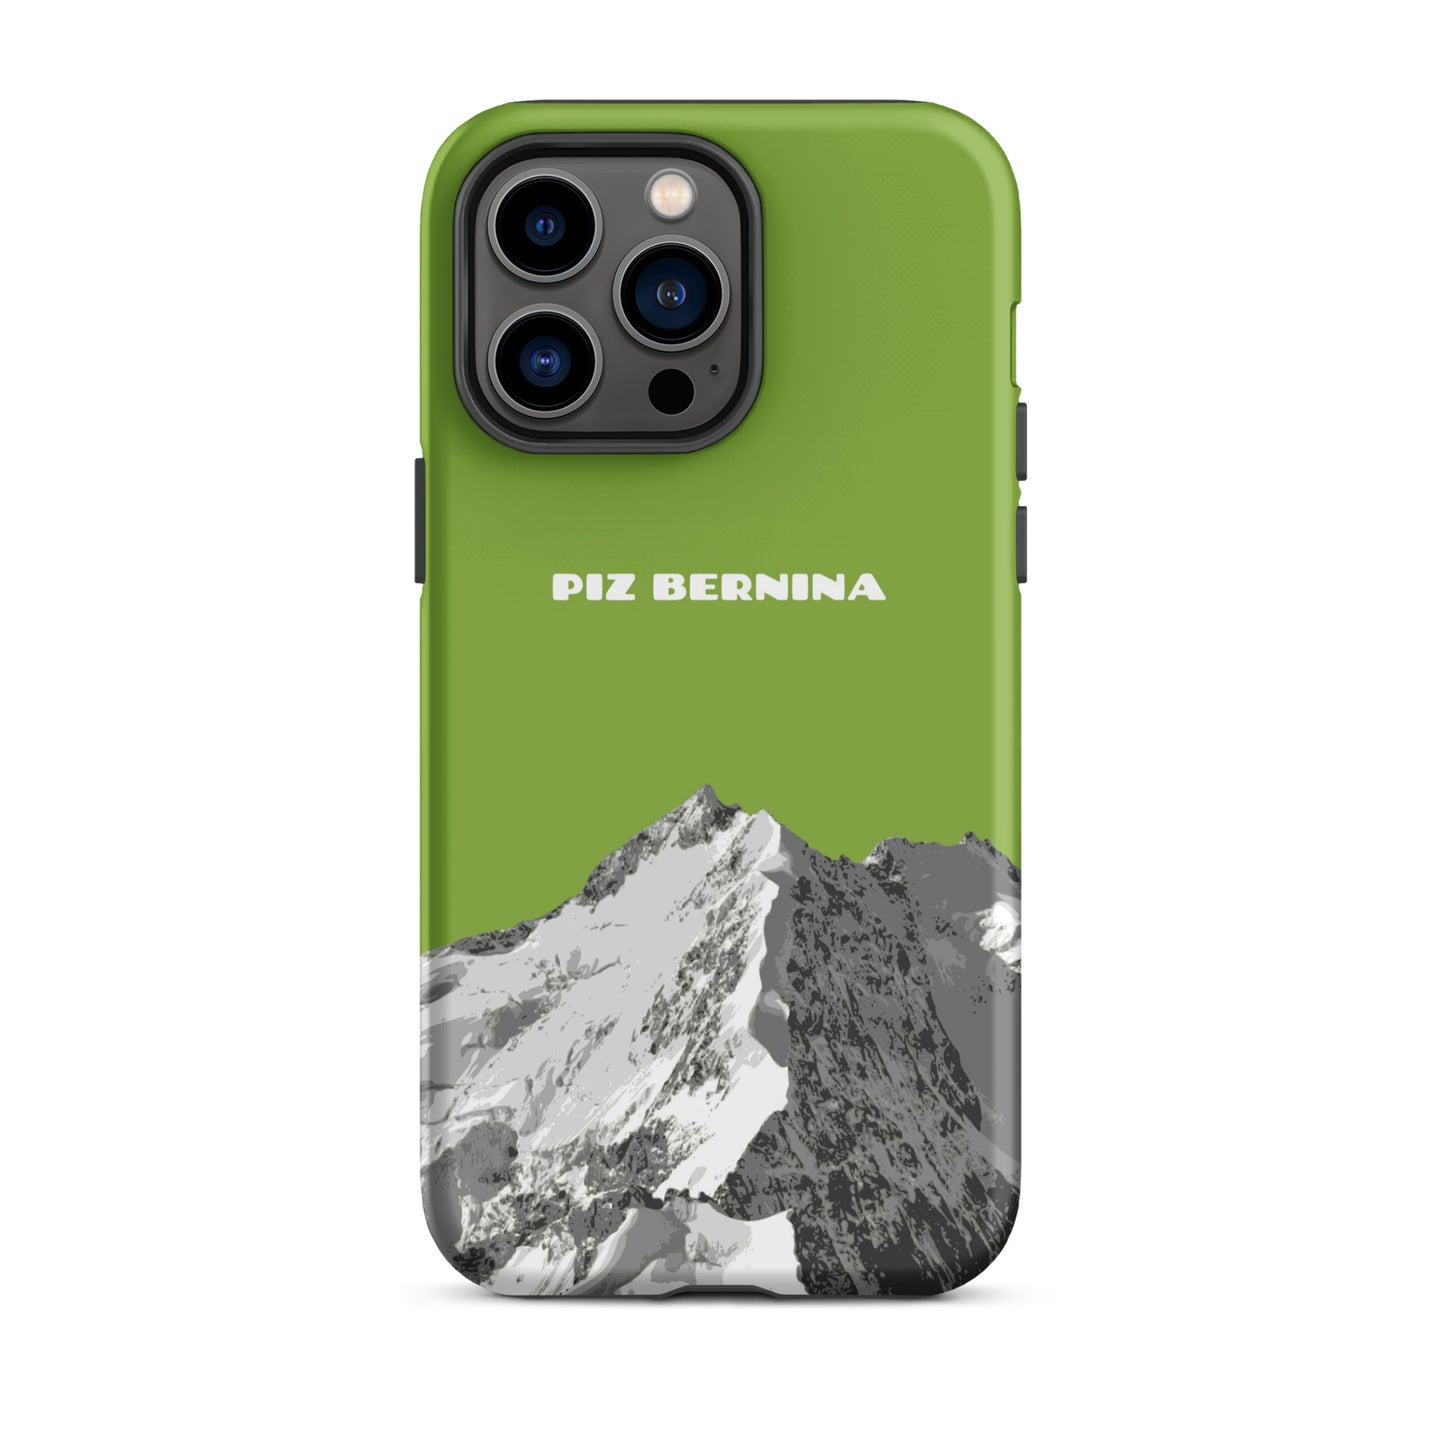 Hülle für das iPhone 14 Pro Max von Apple in der Farbe Gelbgrün, dass den Piz Bernina in Graubünden zeigt.